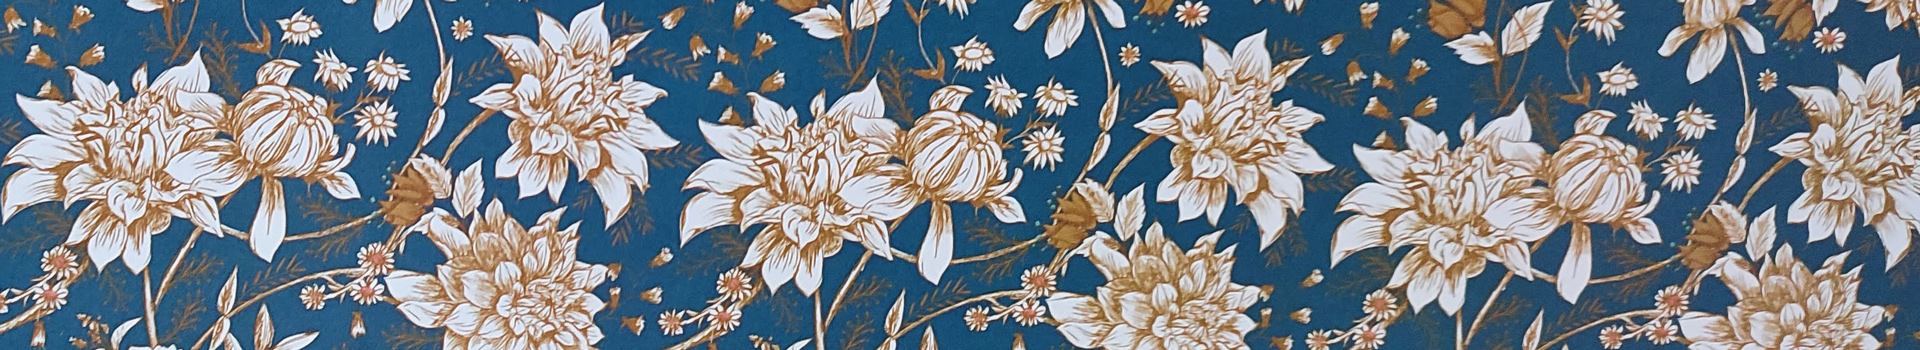 textura-flores-naranjas con fondo azul